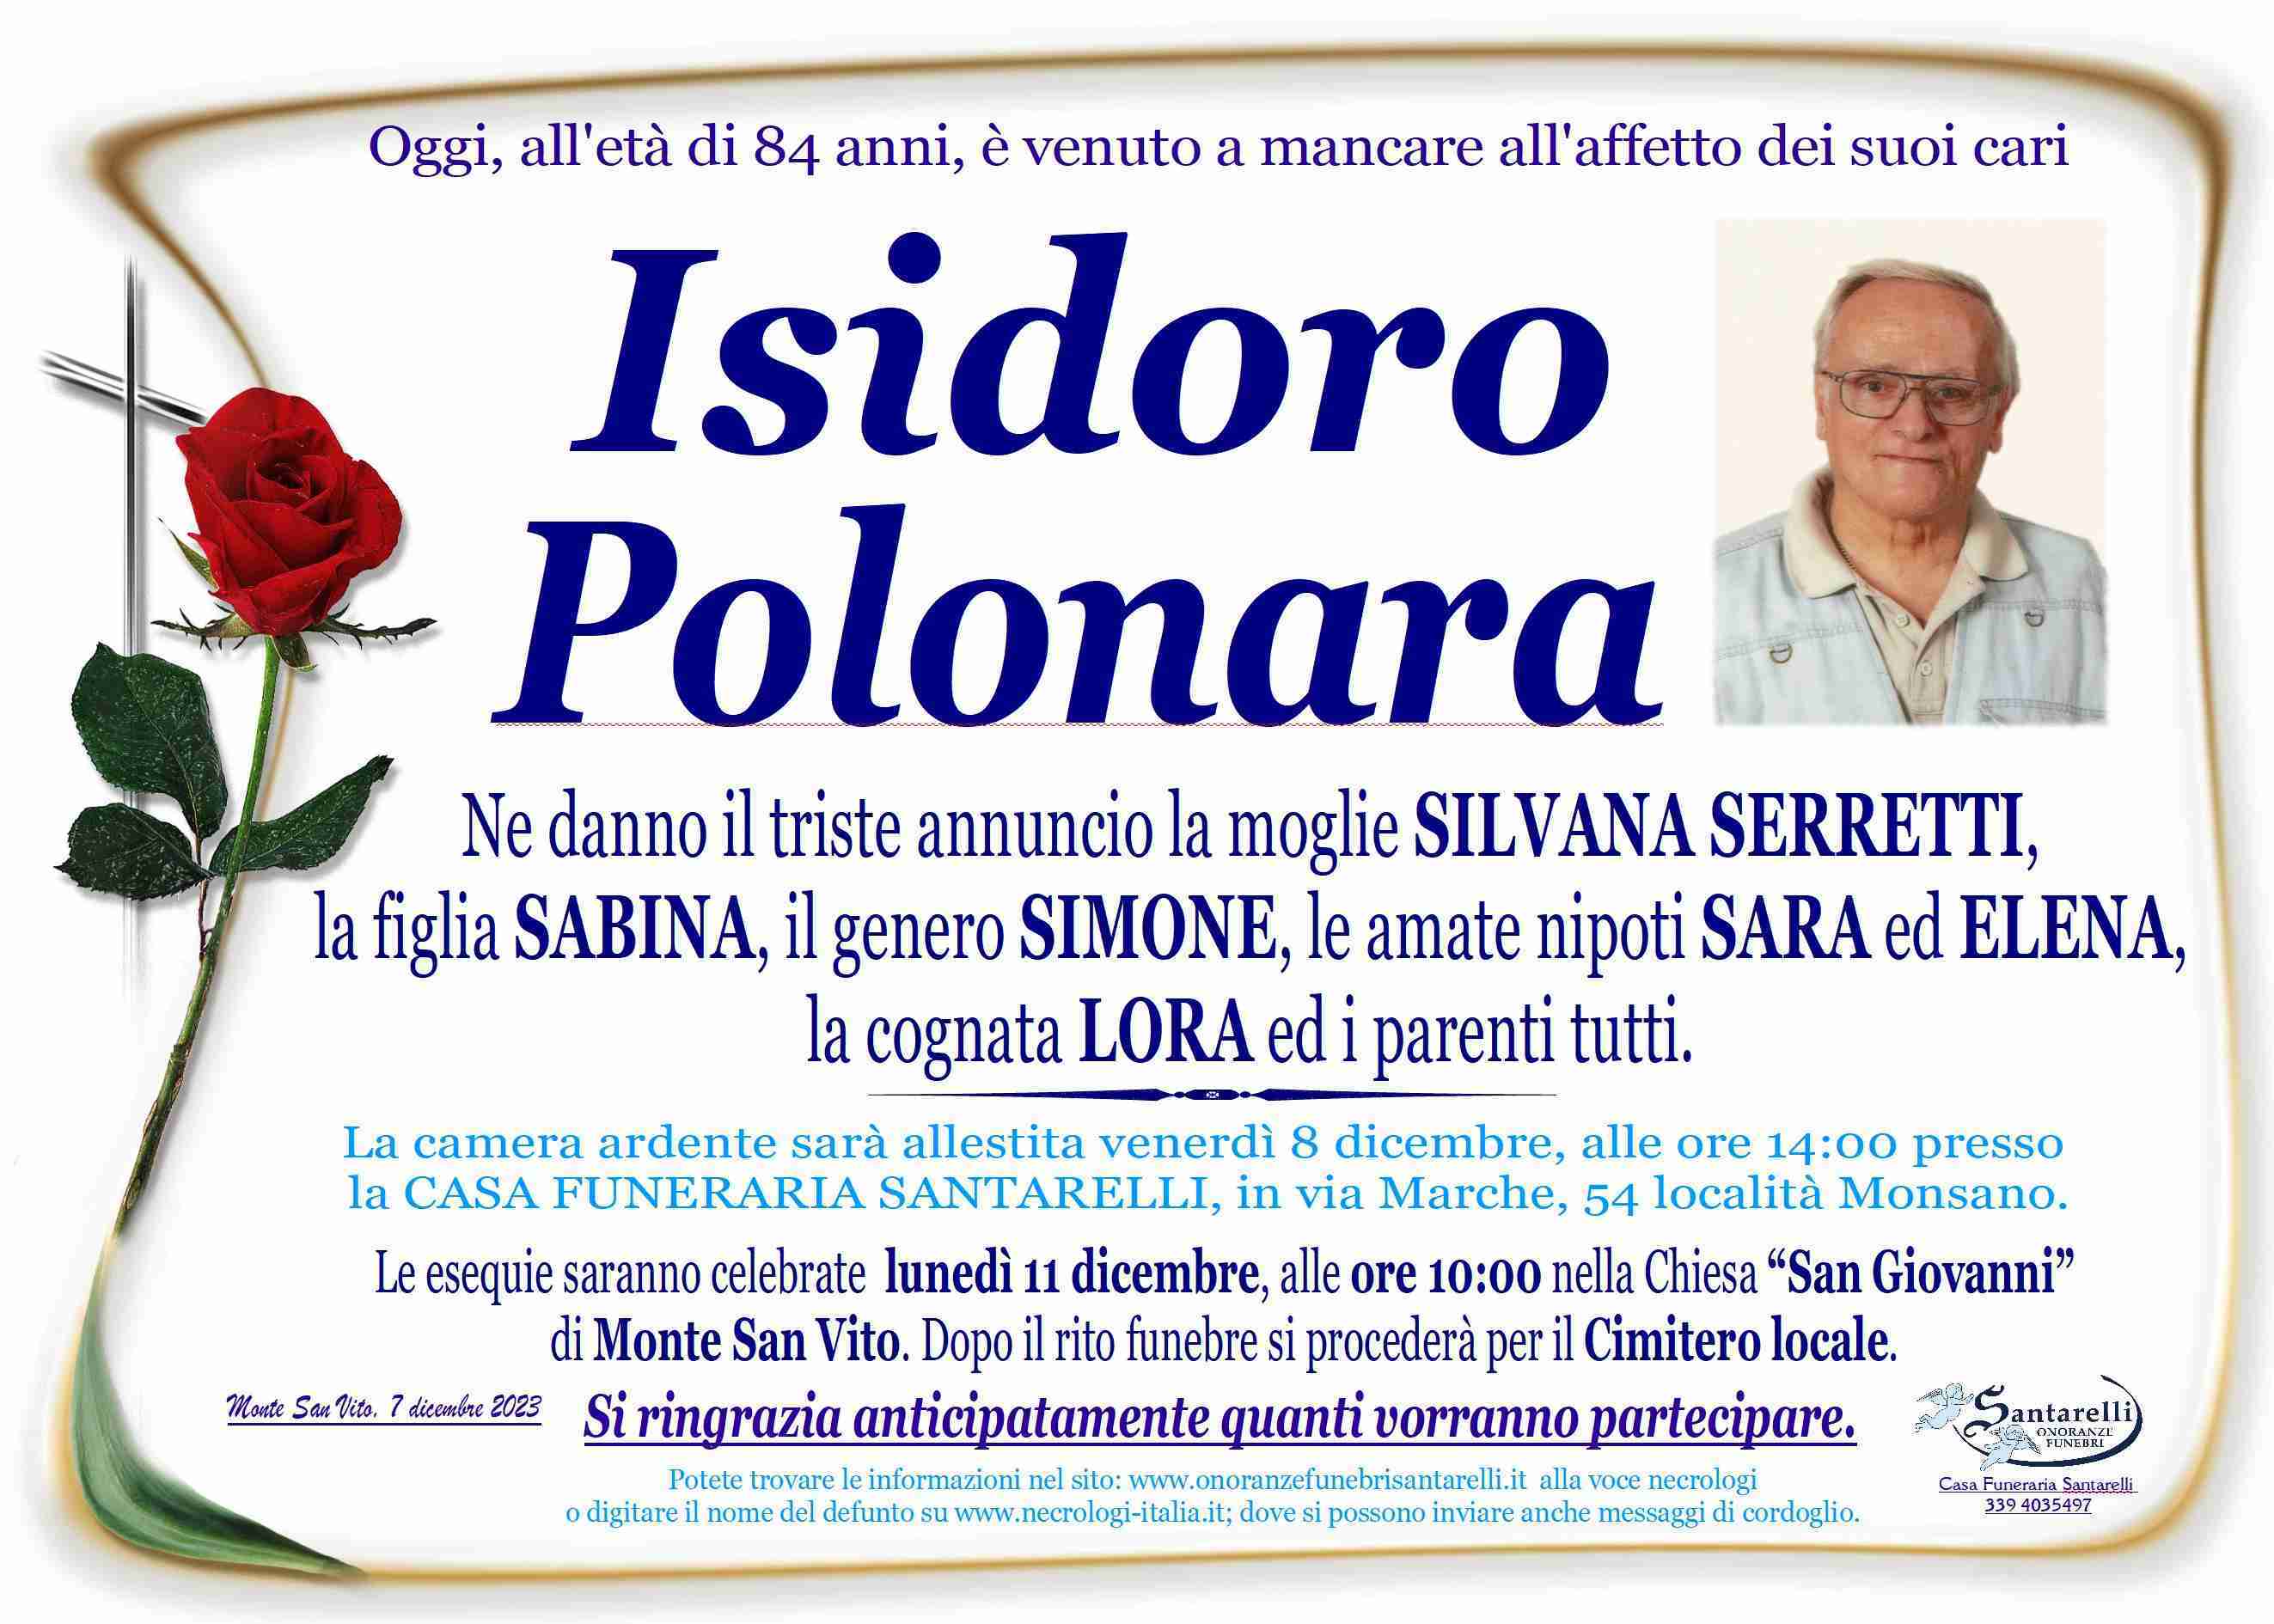 Isidoro Polonara